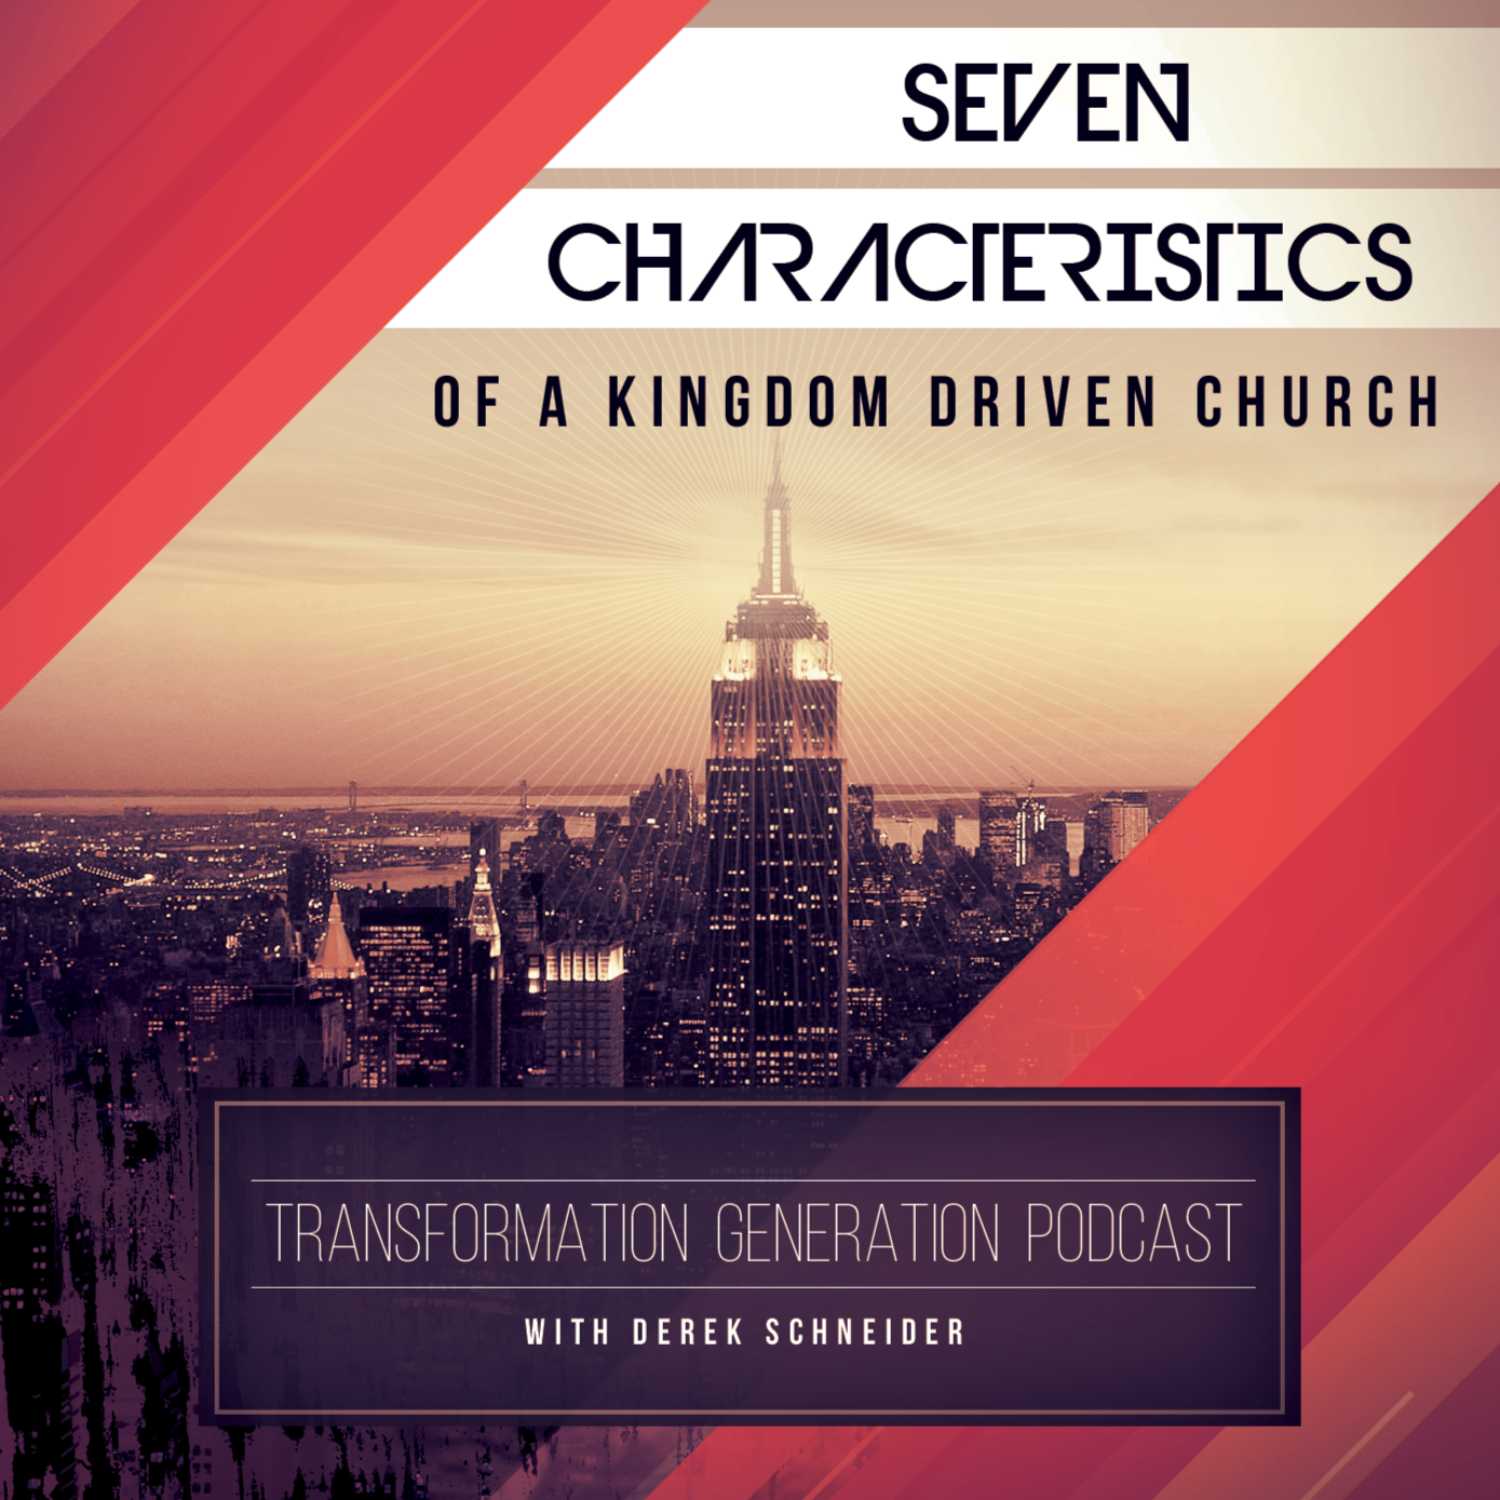 7 Characteristics of a Kingdom Church